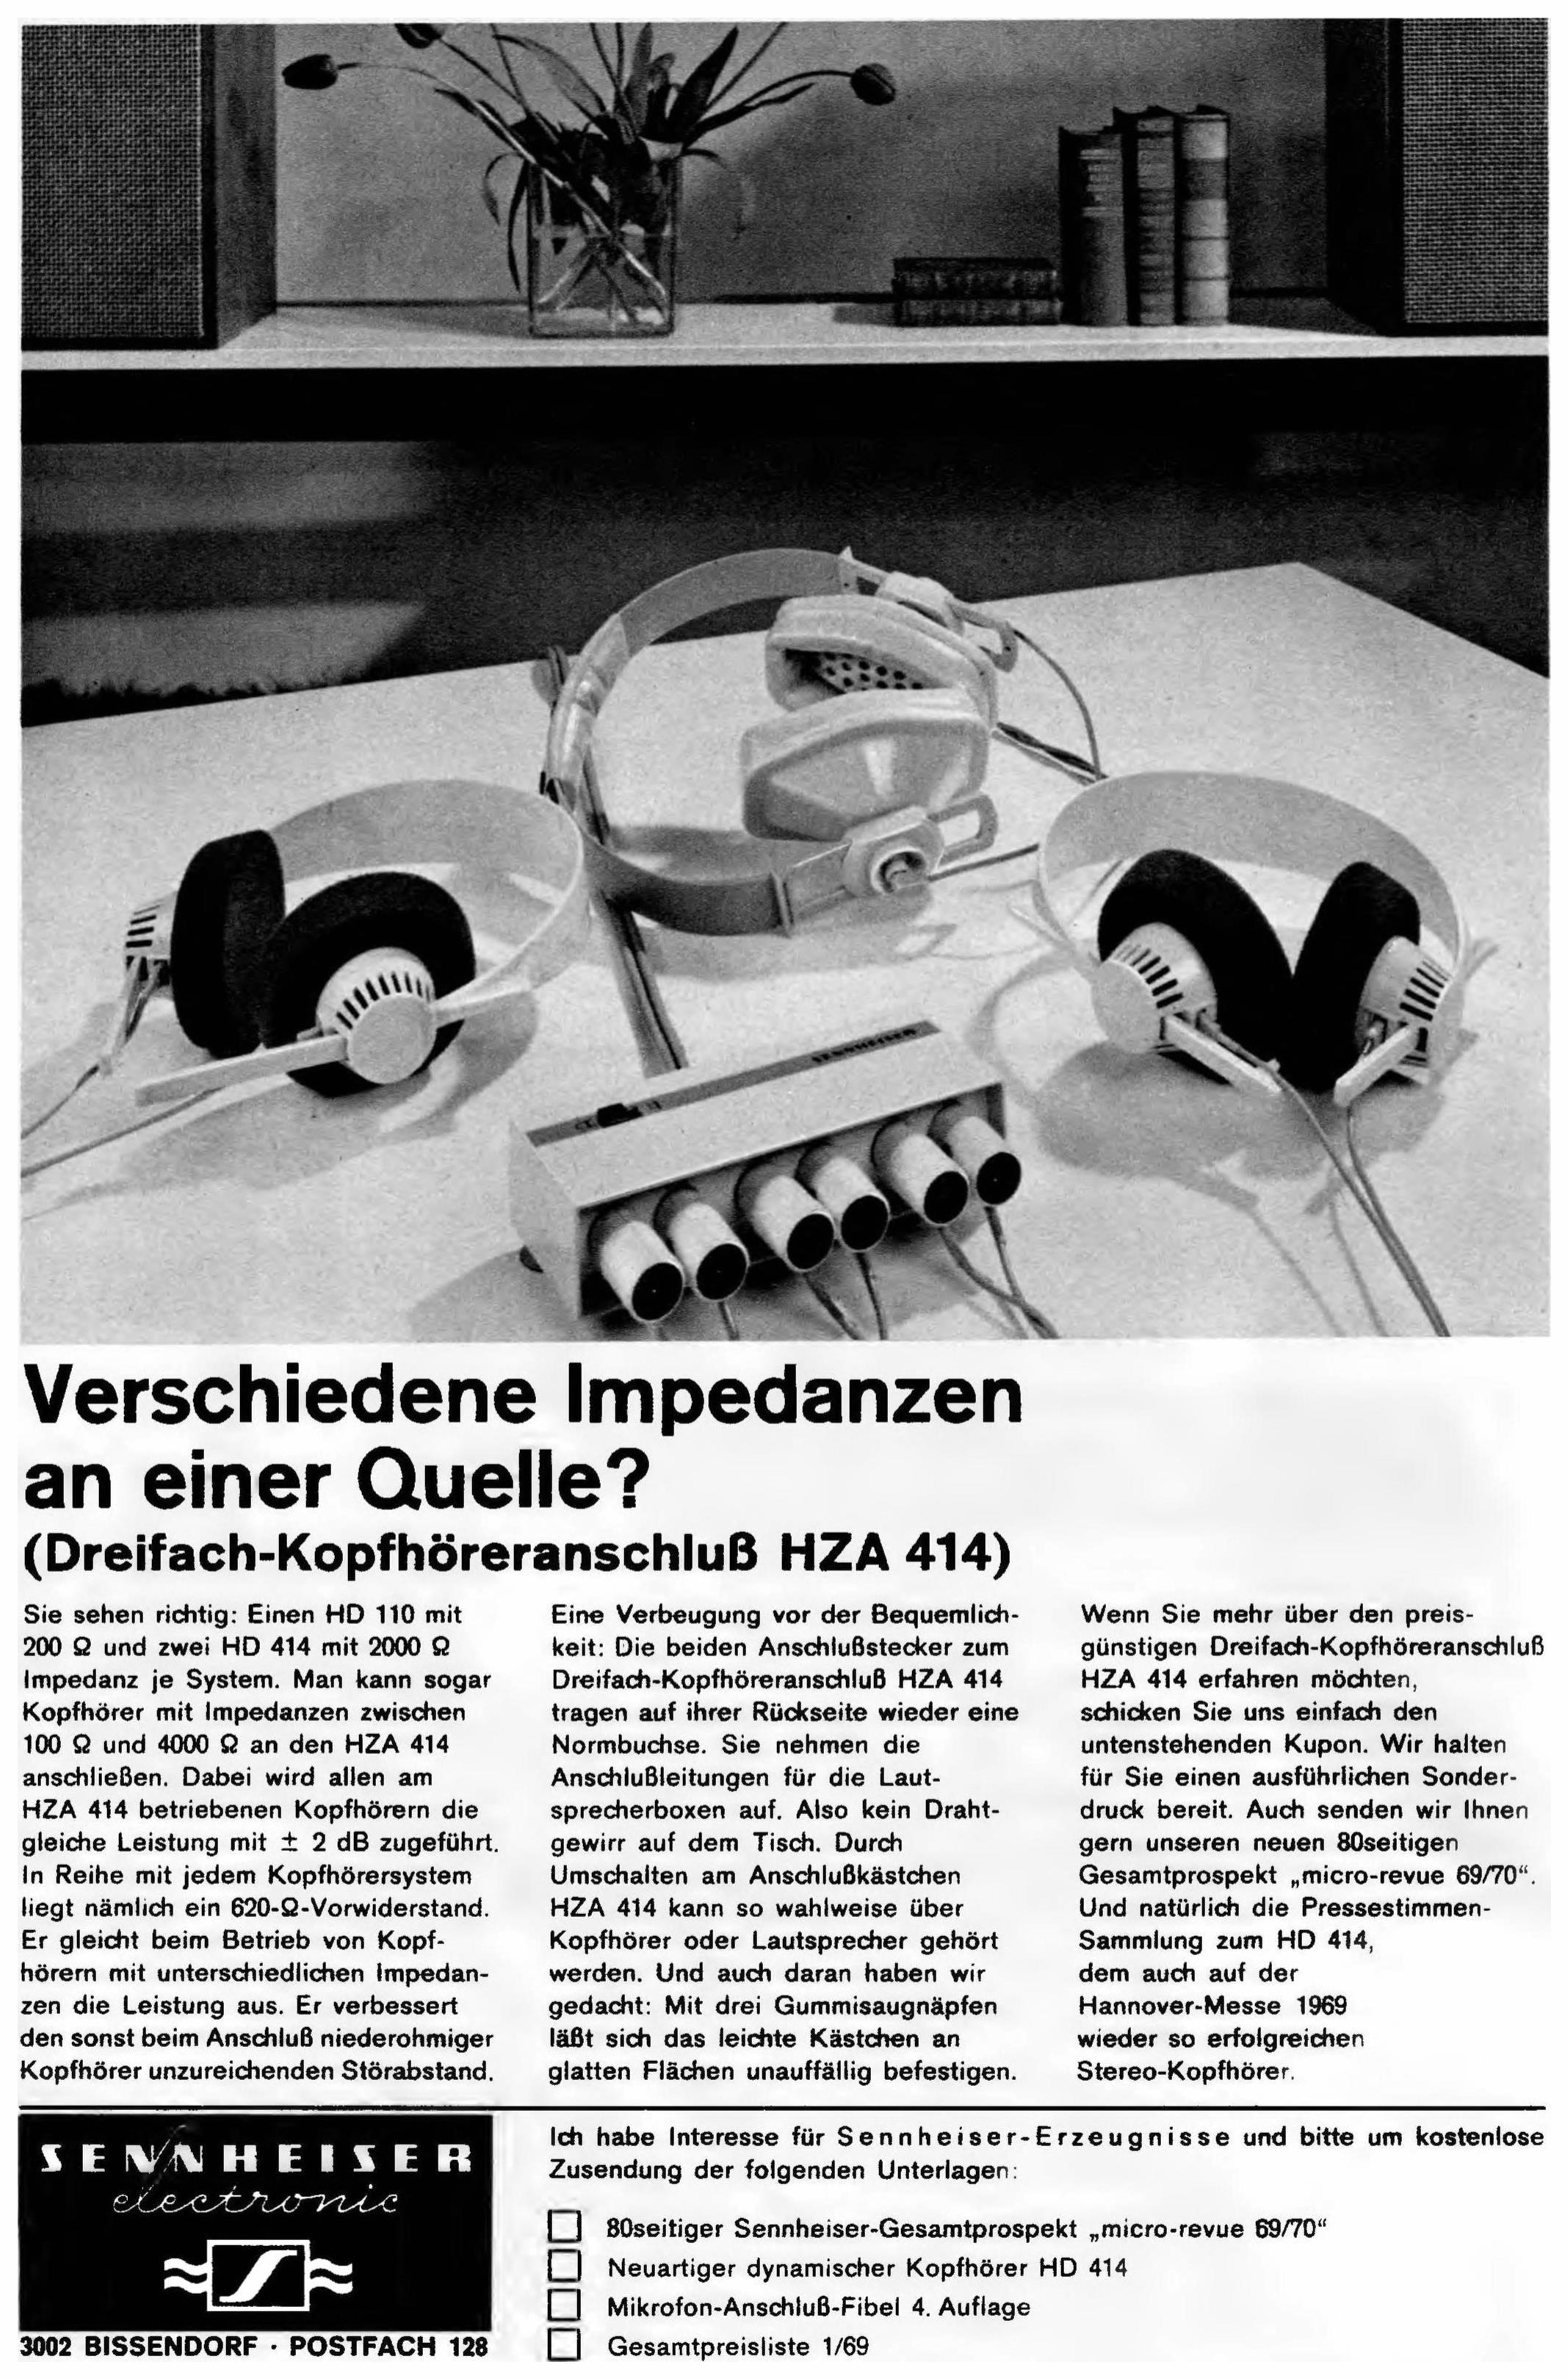 Sennheiser 1969 4.jpg